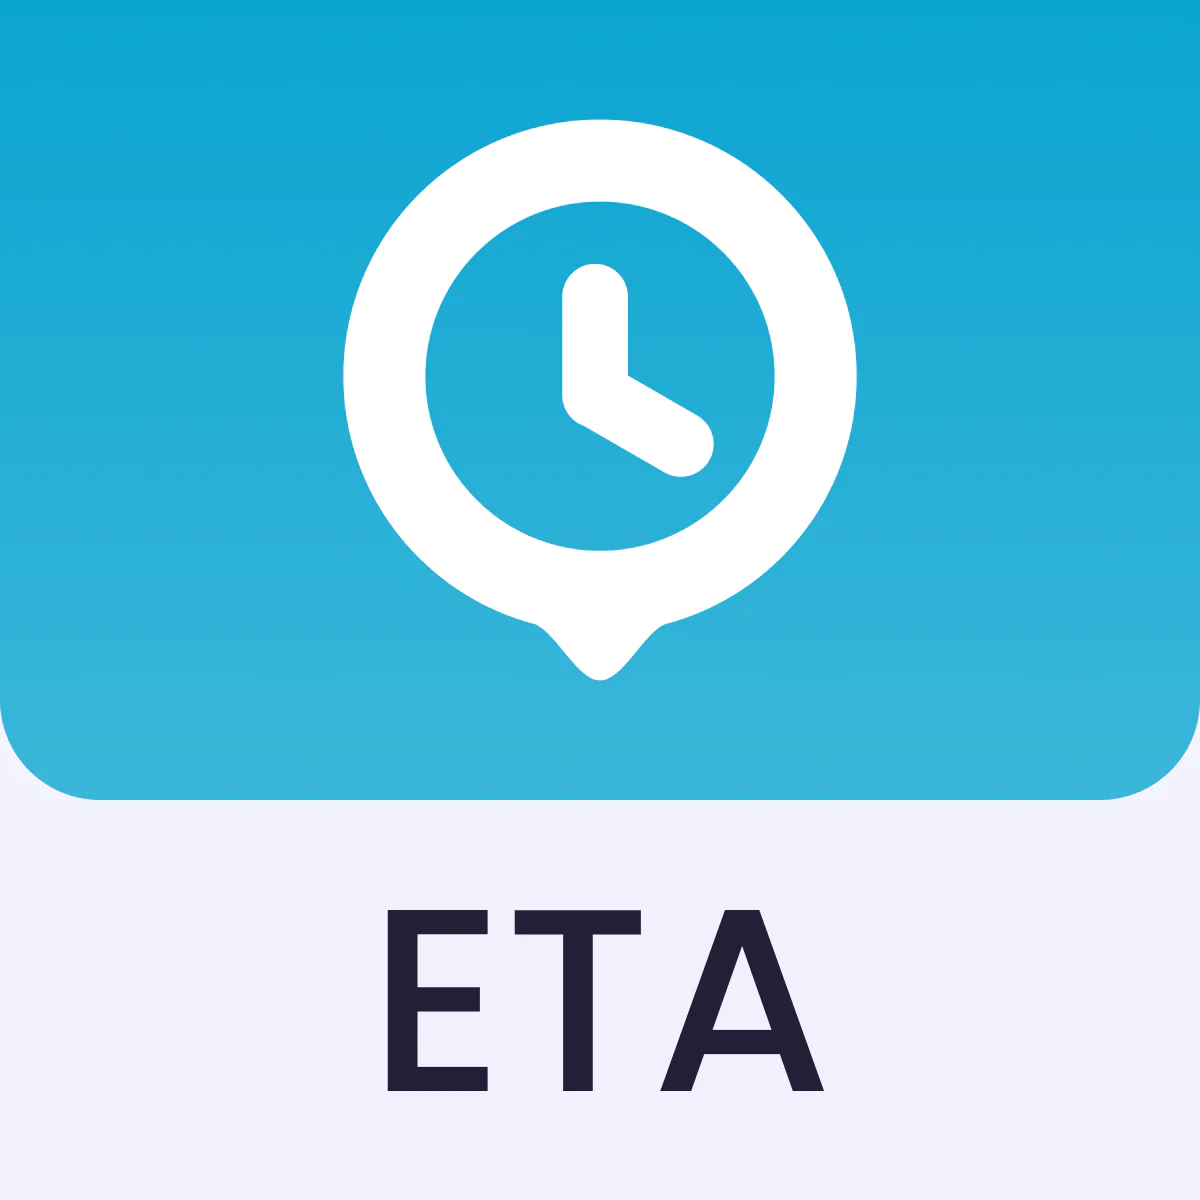 Estimated Delivery Date ‑ ETA